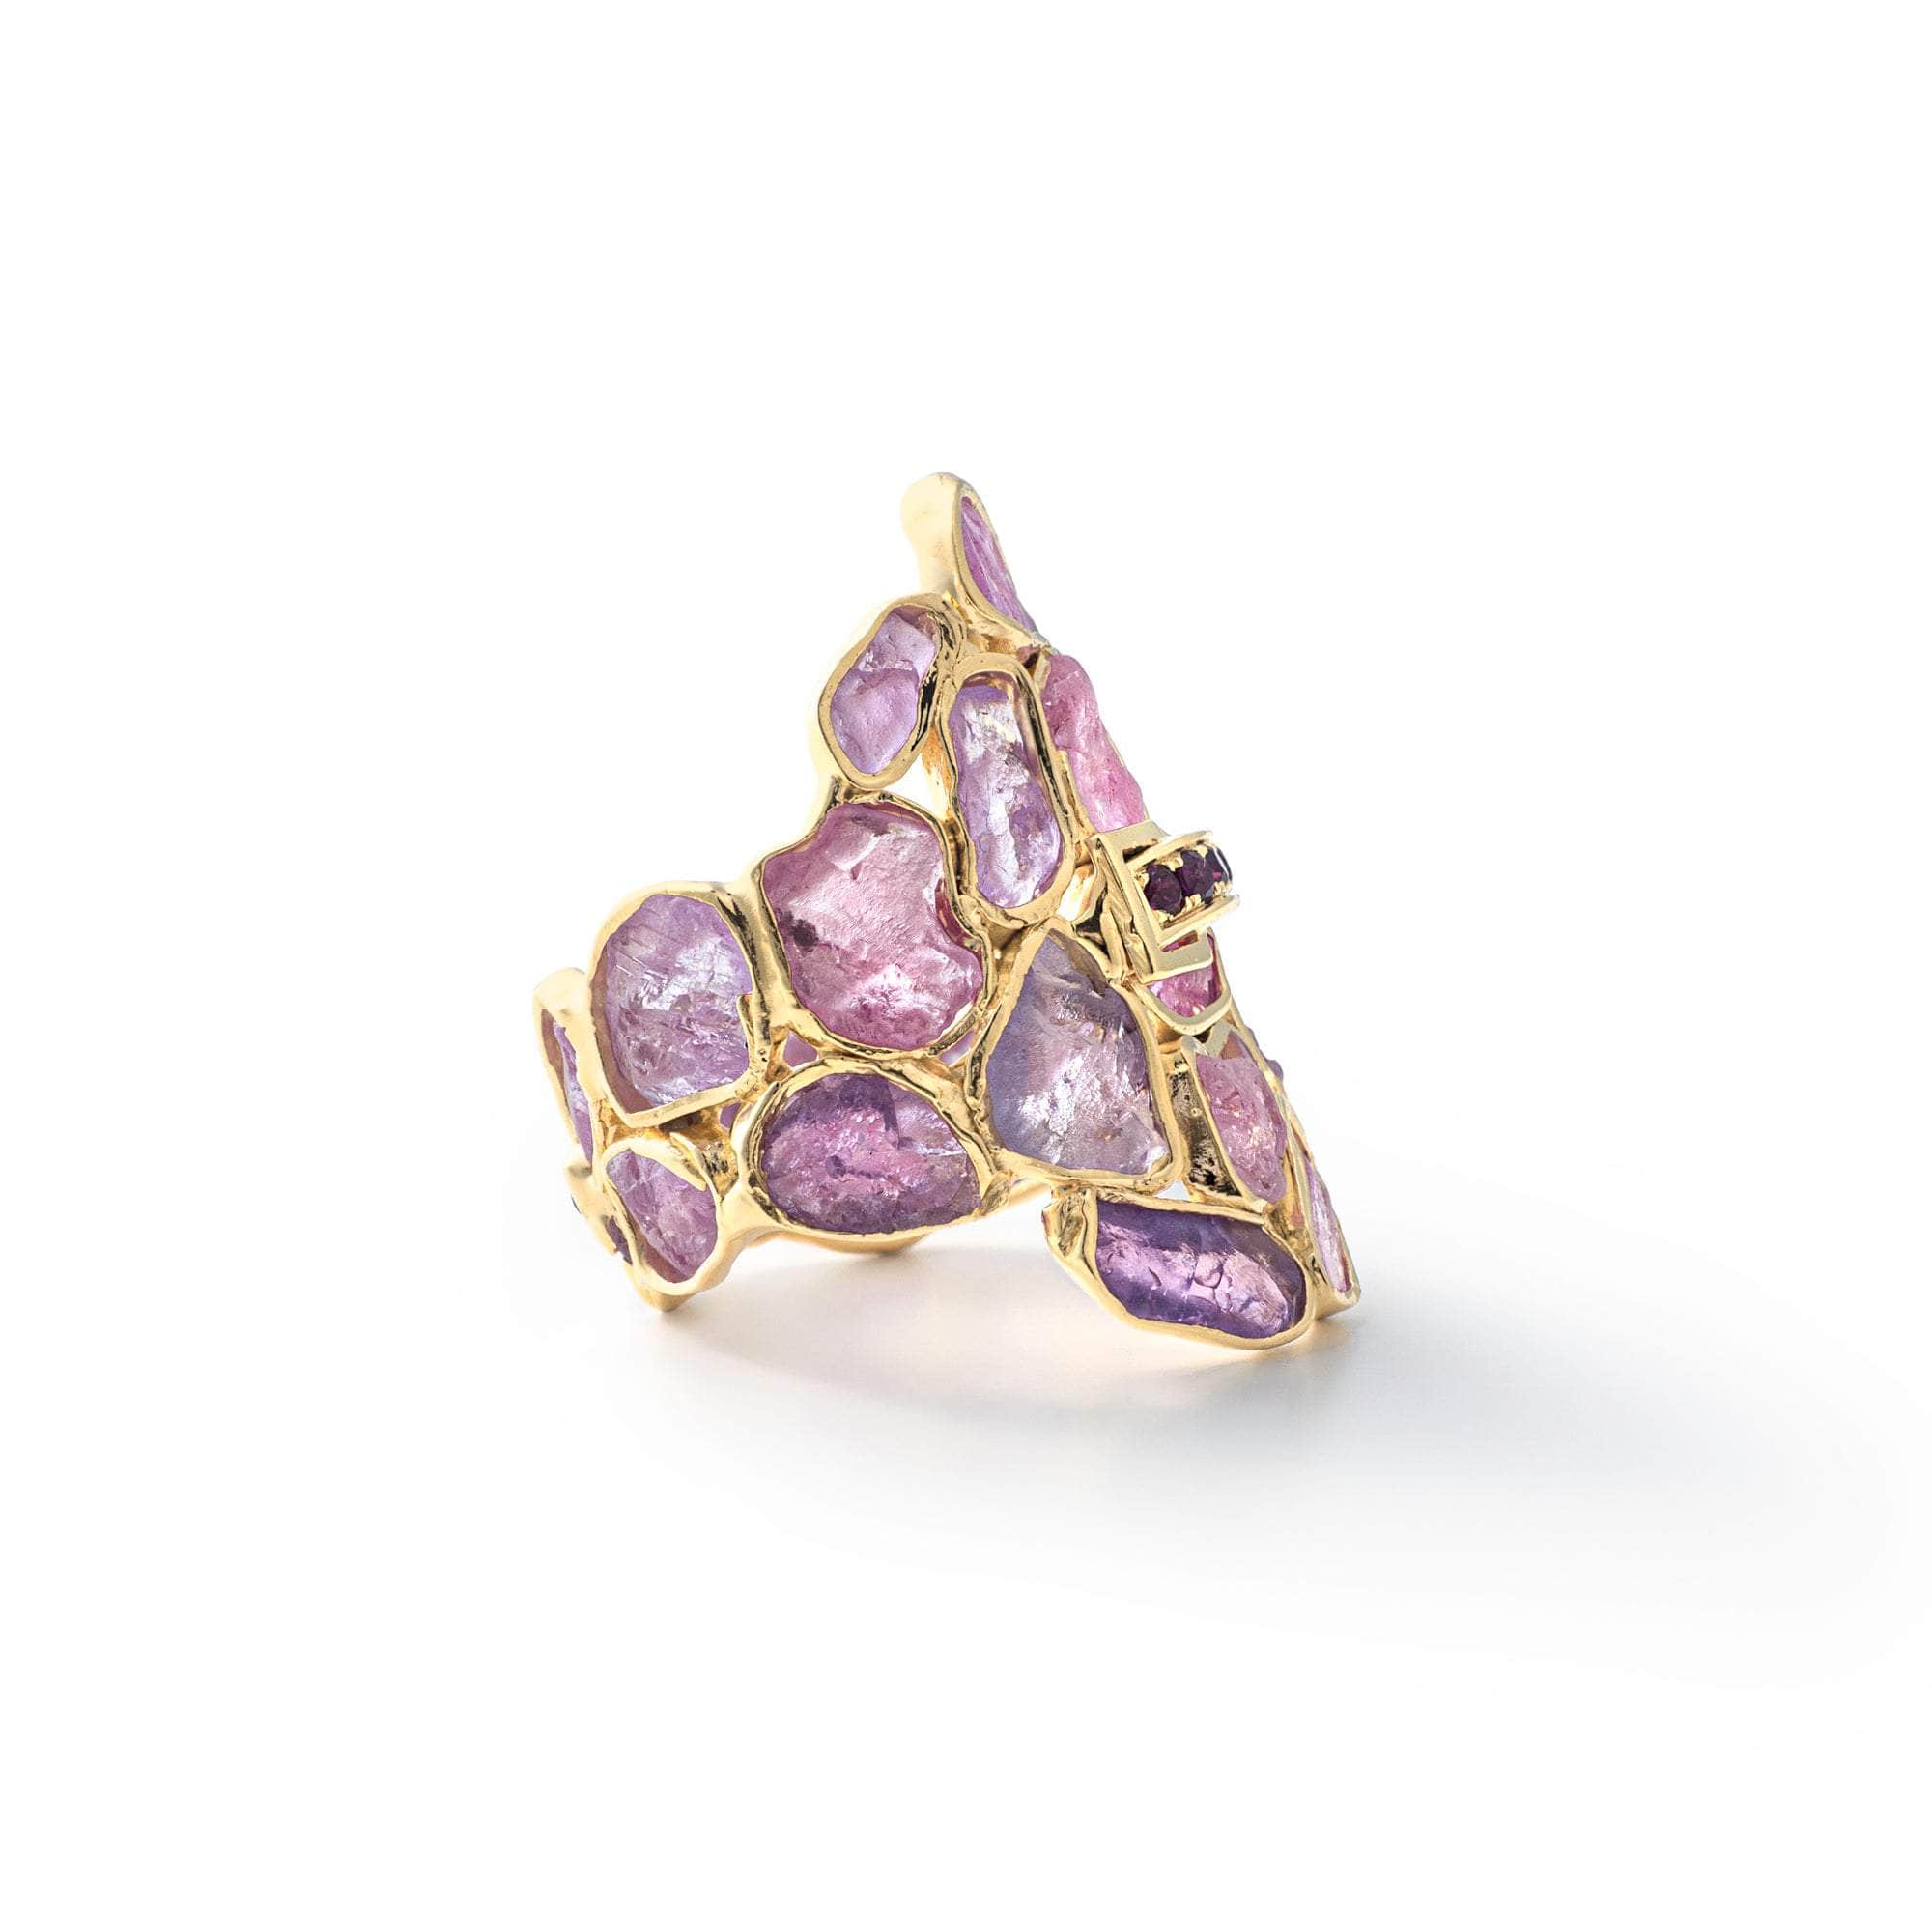 Hichel Rough Pink Sapphire and Rhodolite Ring GERMAN KABIRSKI